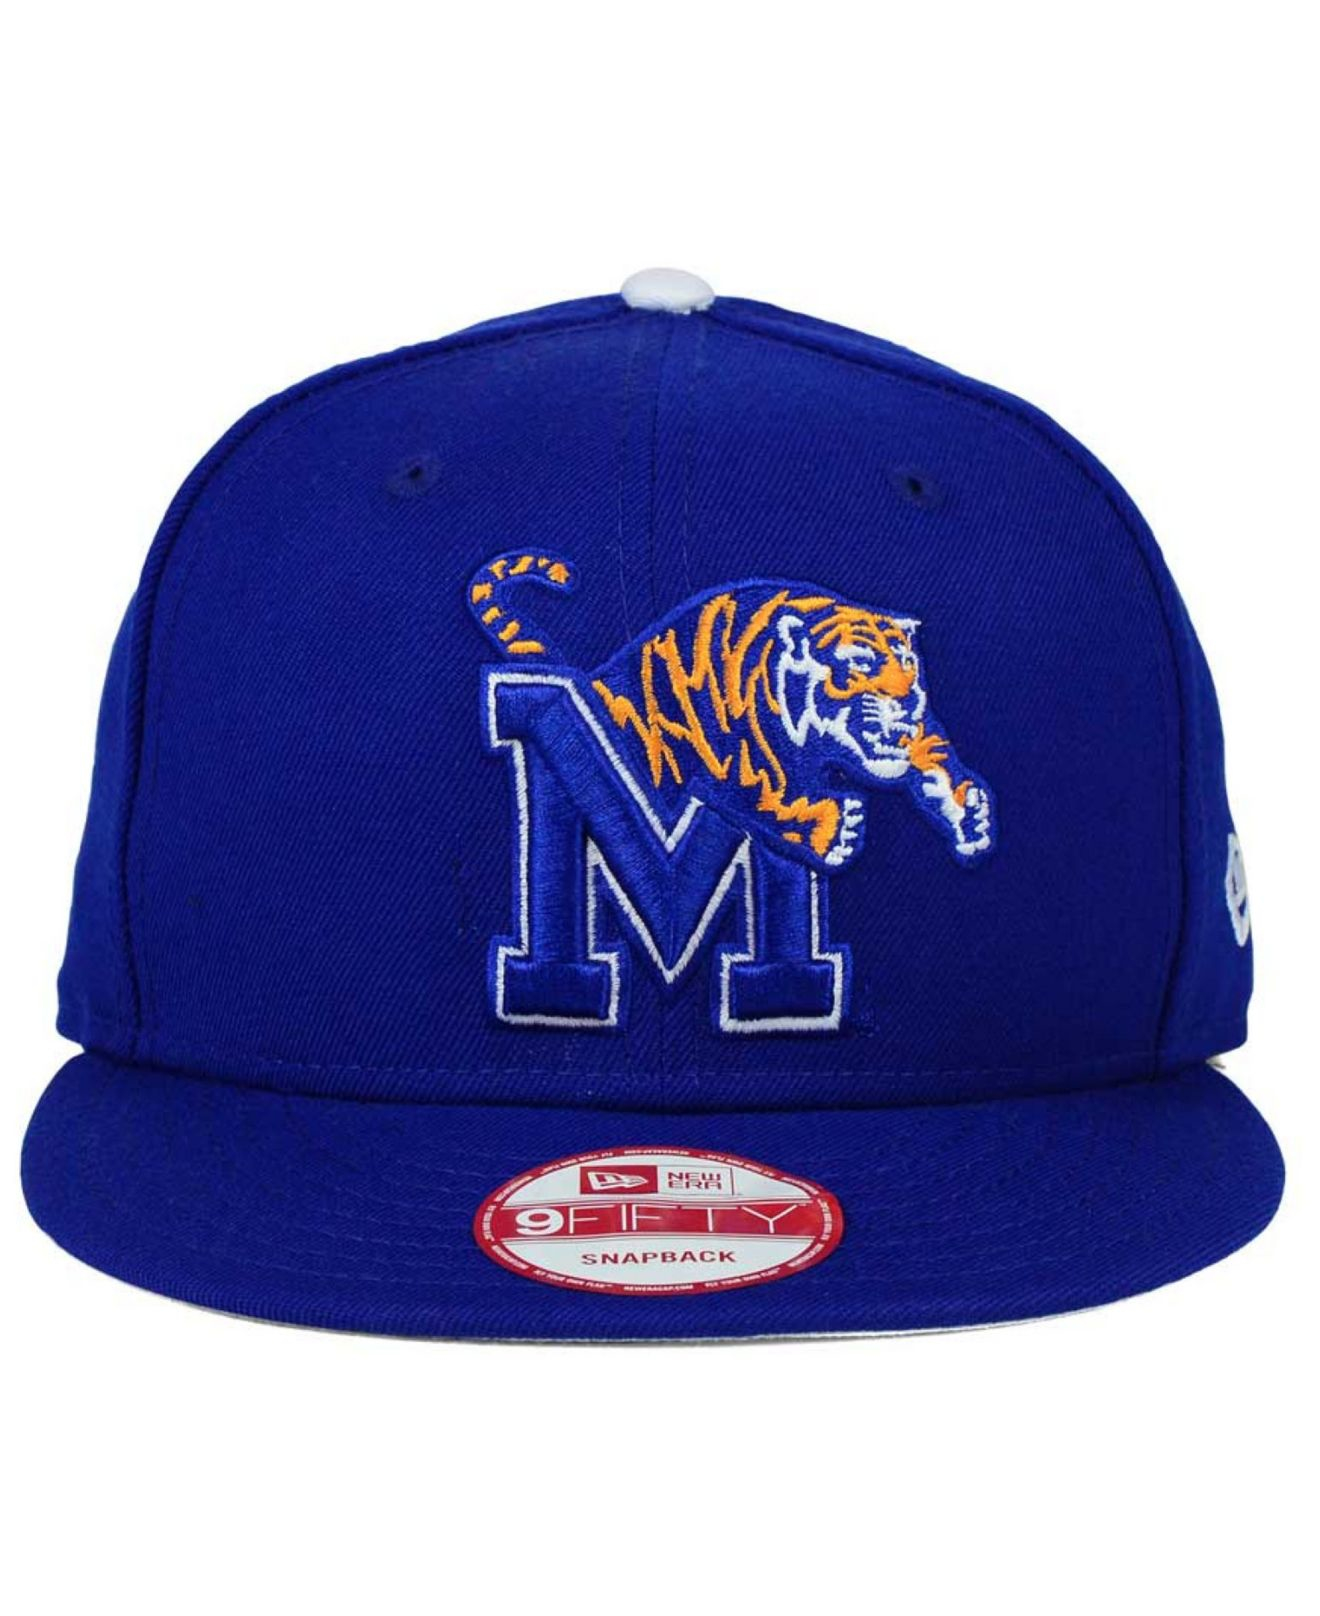 KTZ Memphis Tigers Core 9fifty Snapback Cap in Blue for Men